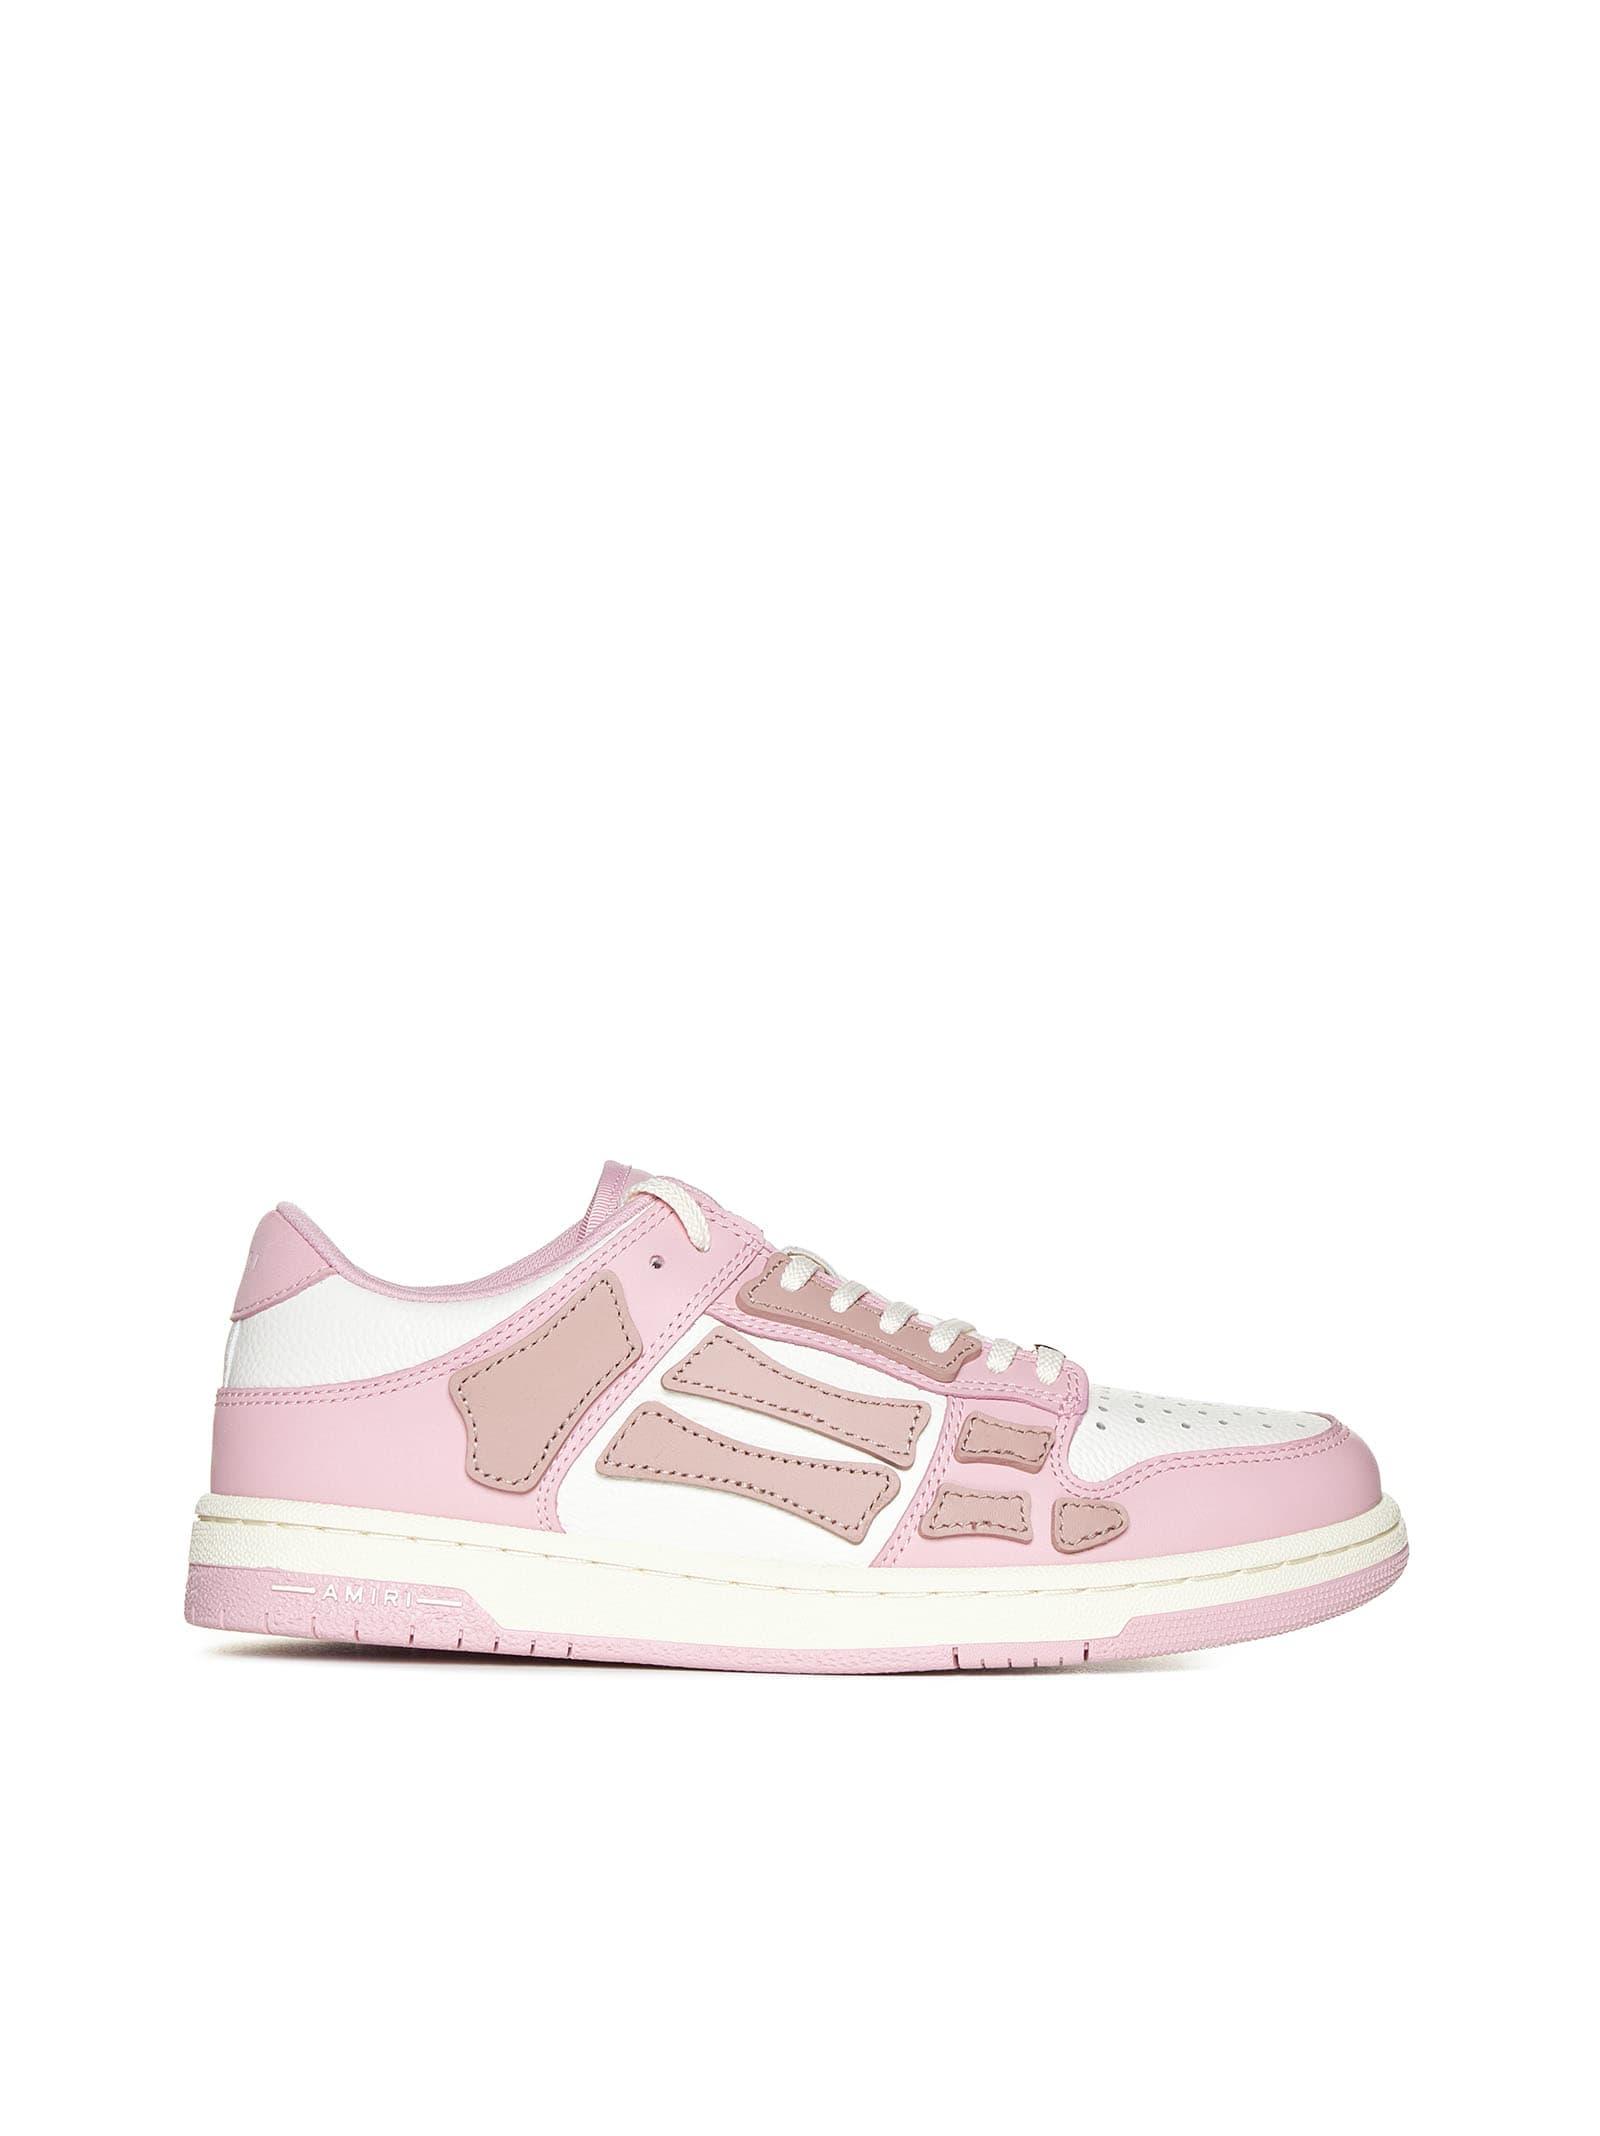 Amiri Skel Leather Low-top Sneakers in Pink | Lyst